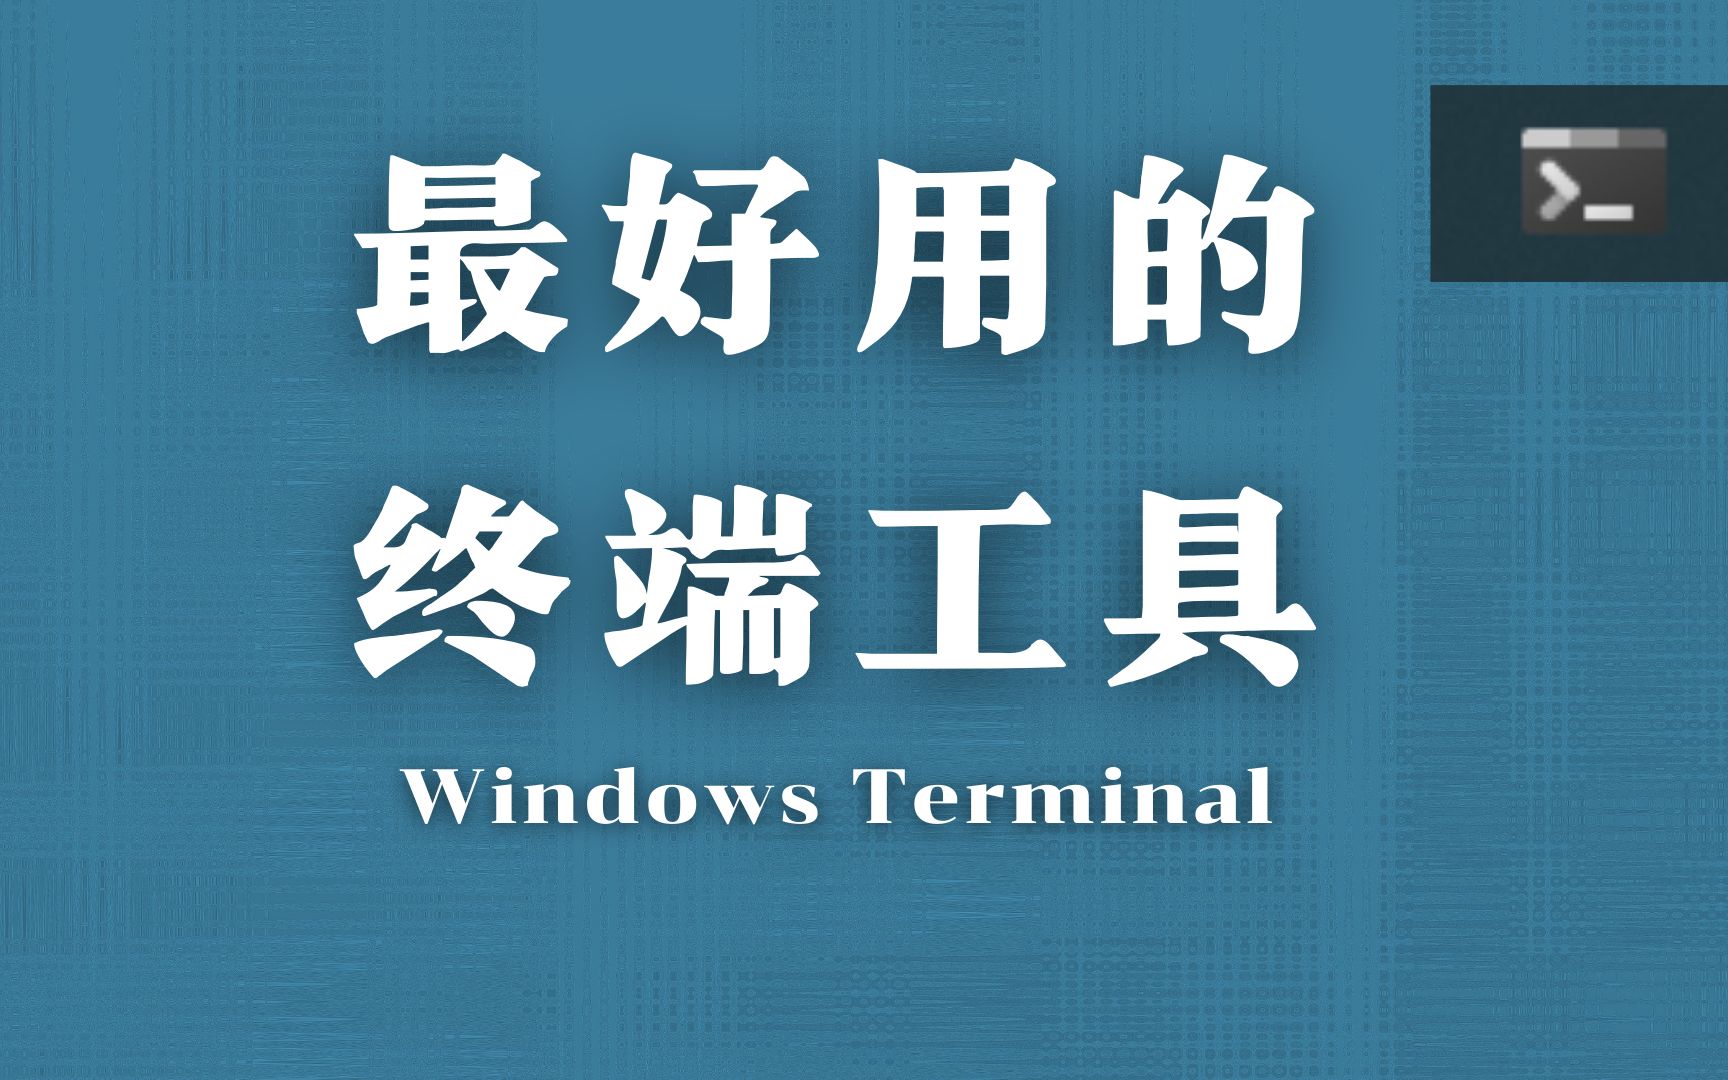 【终端工具】非常好用的windows终端工具——windows terminal！